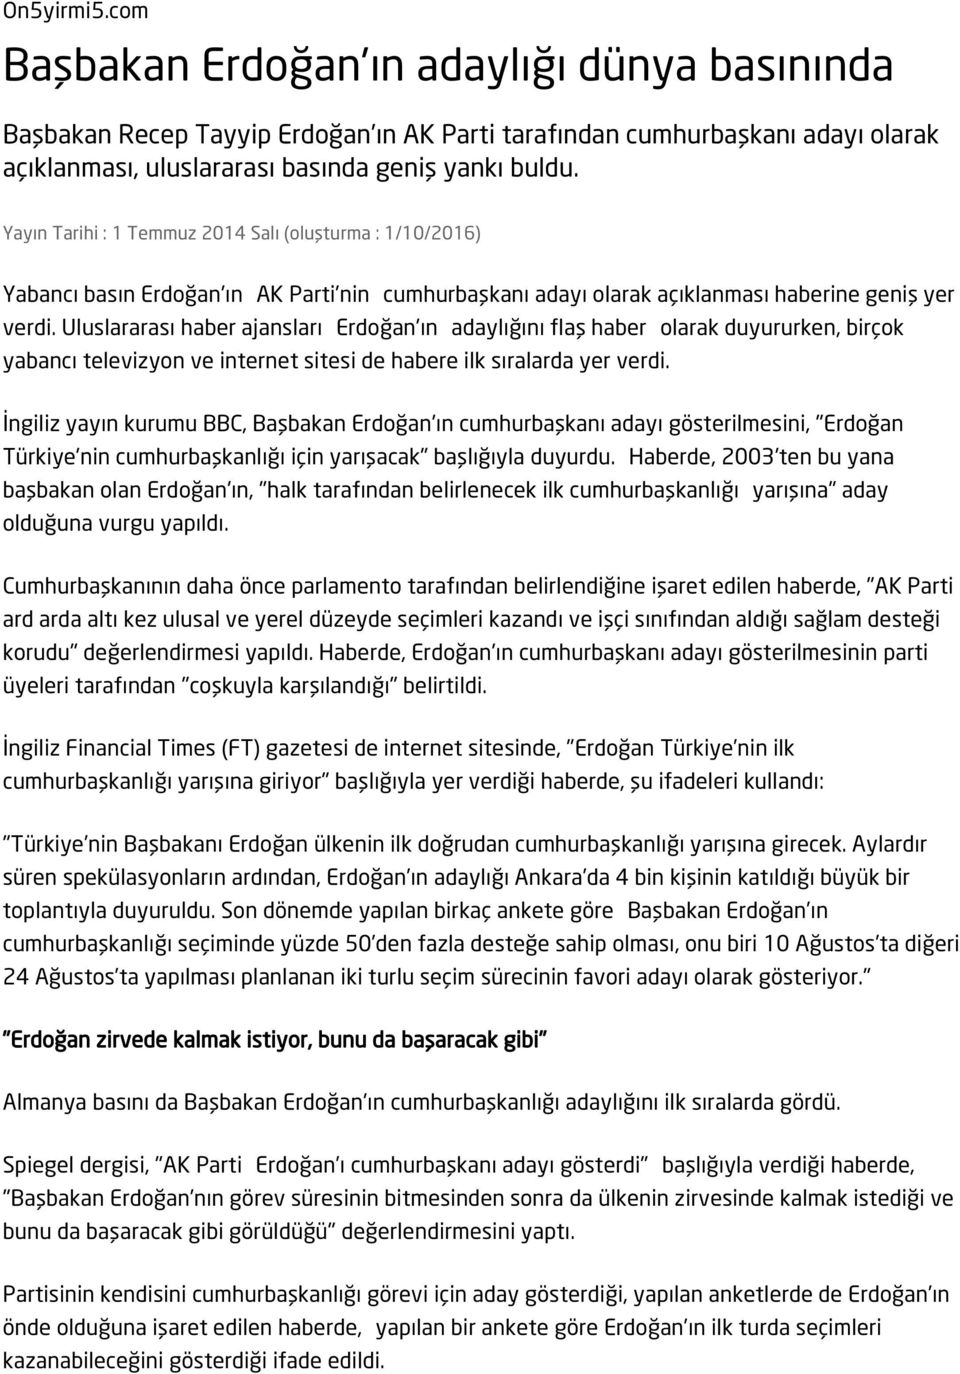 Uluslararası haber ajansları Erdoğan'ın adaylığını flaş haber olarak duyururken, birçok yabancı televizyon ve internet sitesi de habere ilk sıralarda yer verdi.